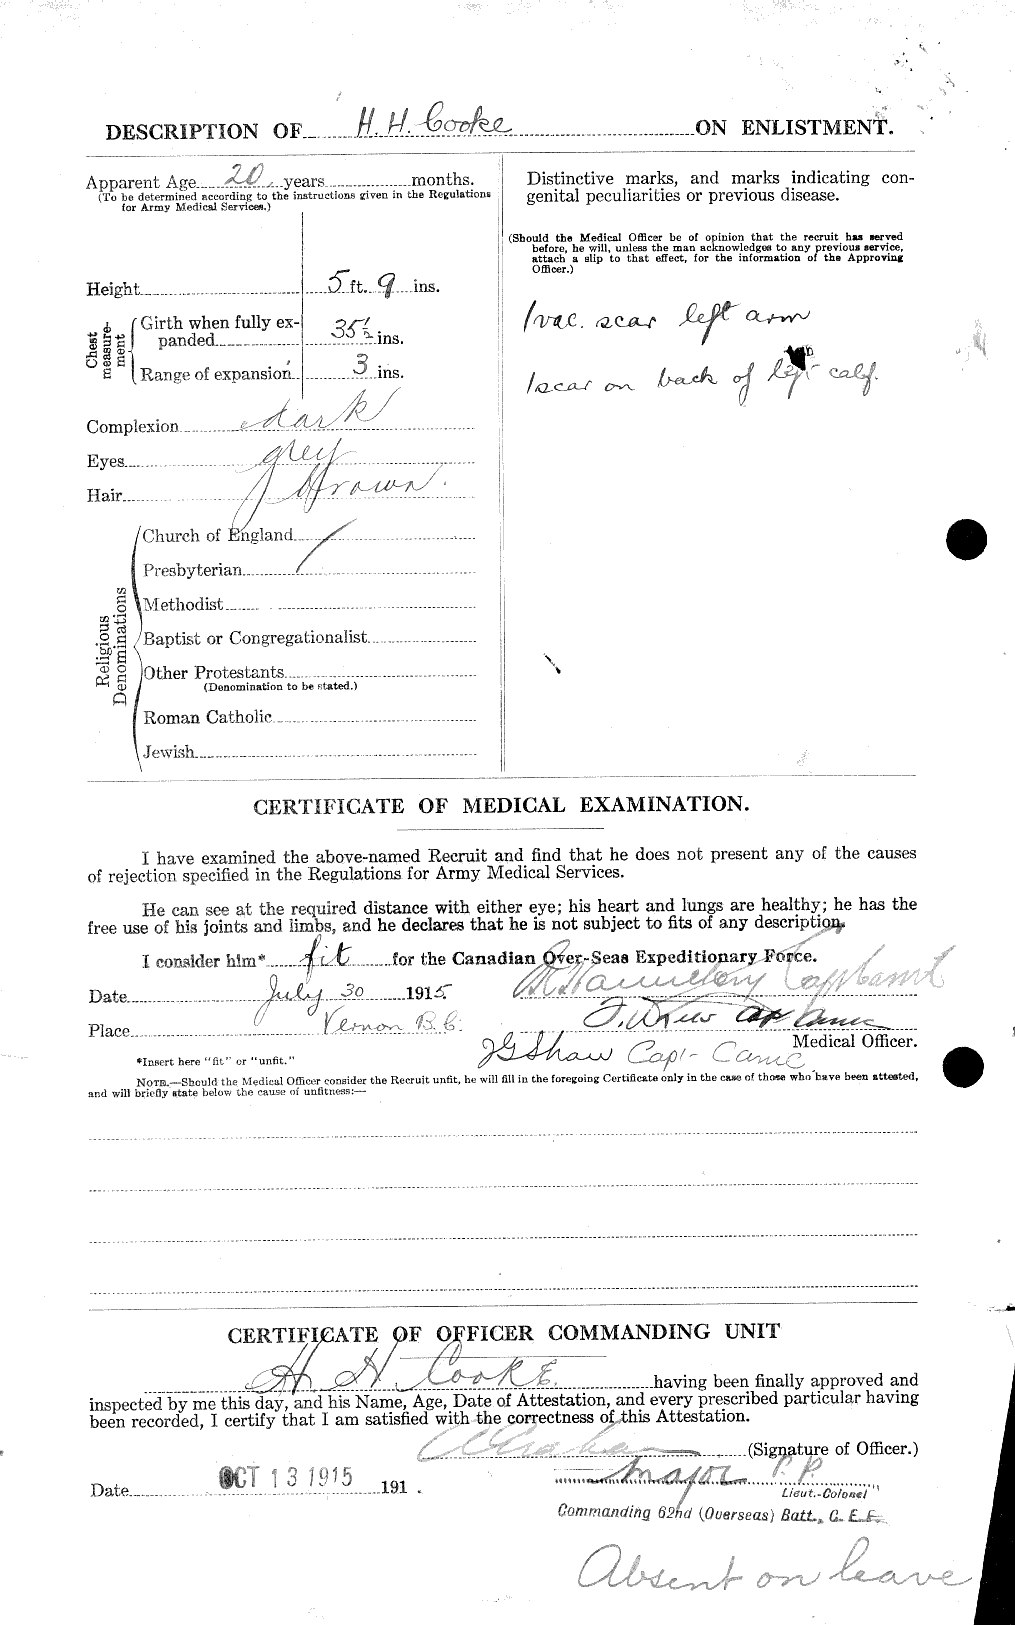 Dossiers du Personnel de la Première Guerre mondiale - CEC 041493b